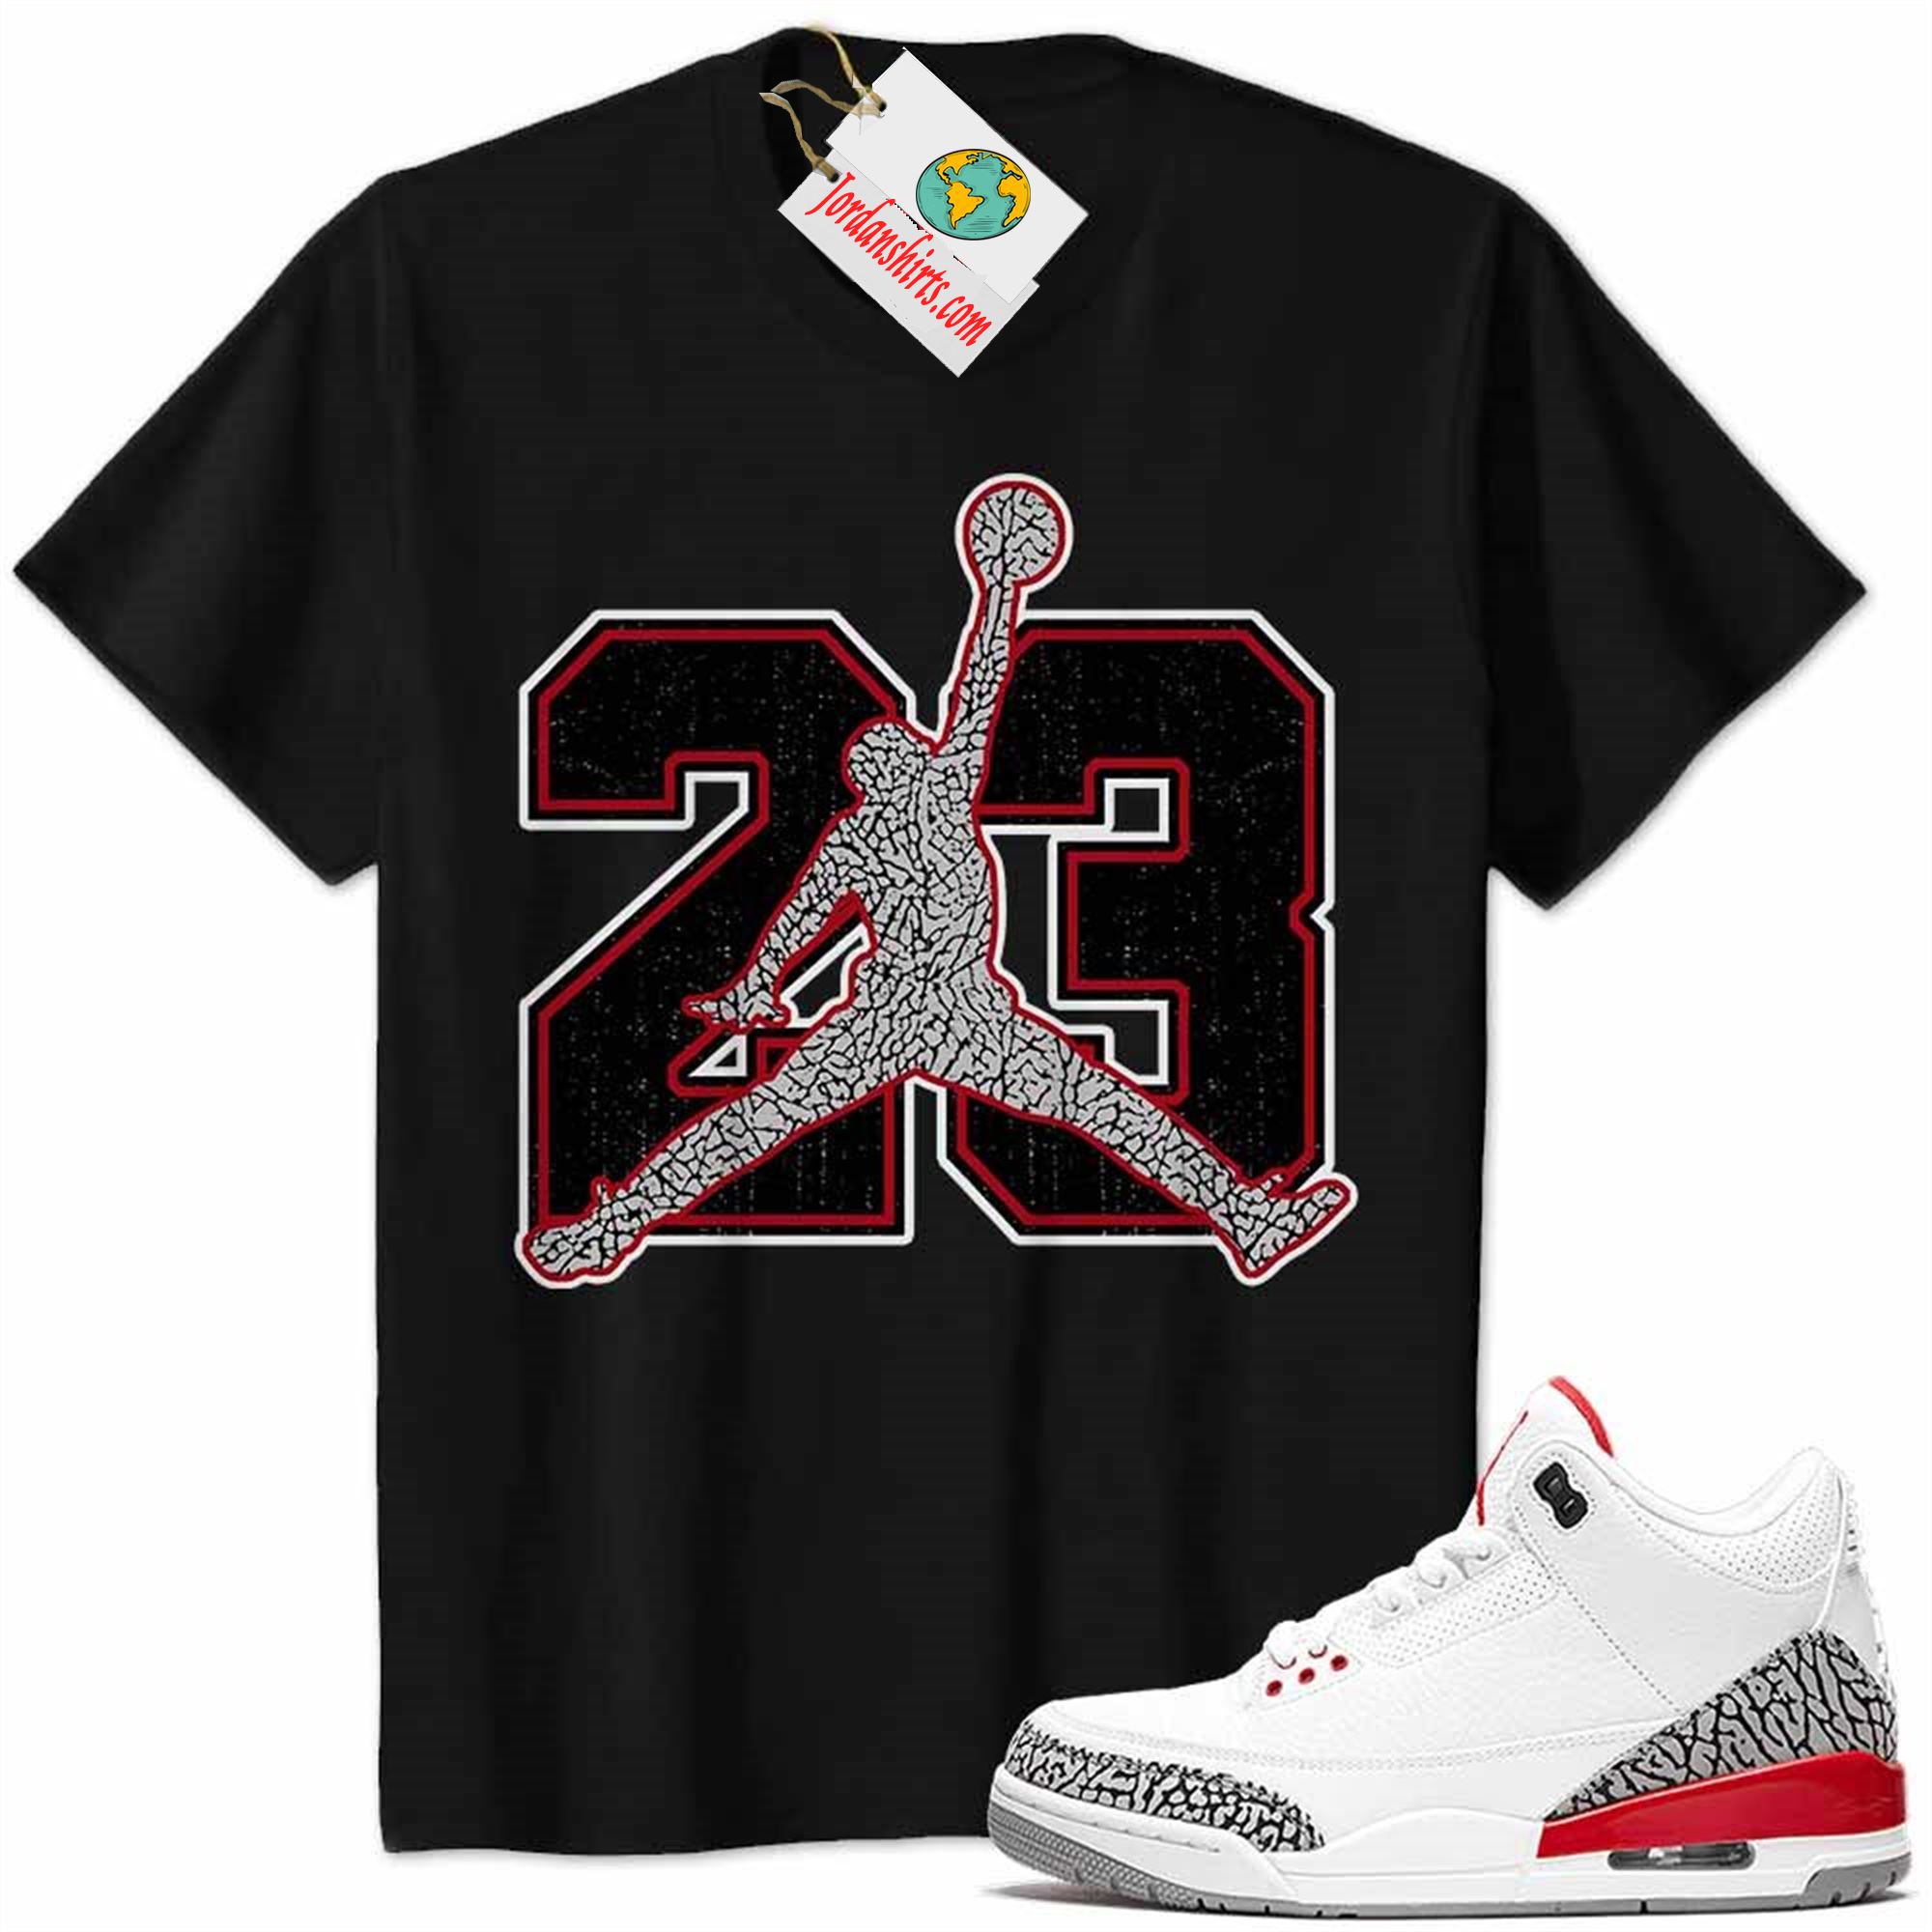 Jordan 3 Shirt, Jordan 3 Katrina Shirt Jumpman No23 Black Full Size Up To 5xl